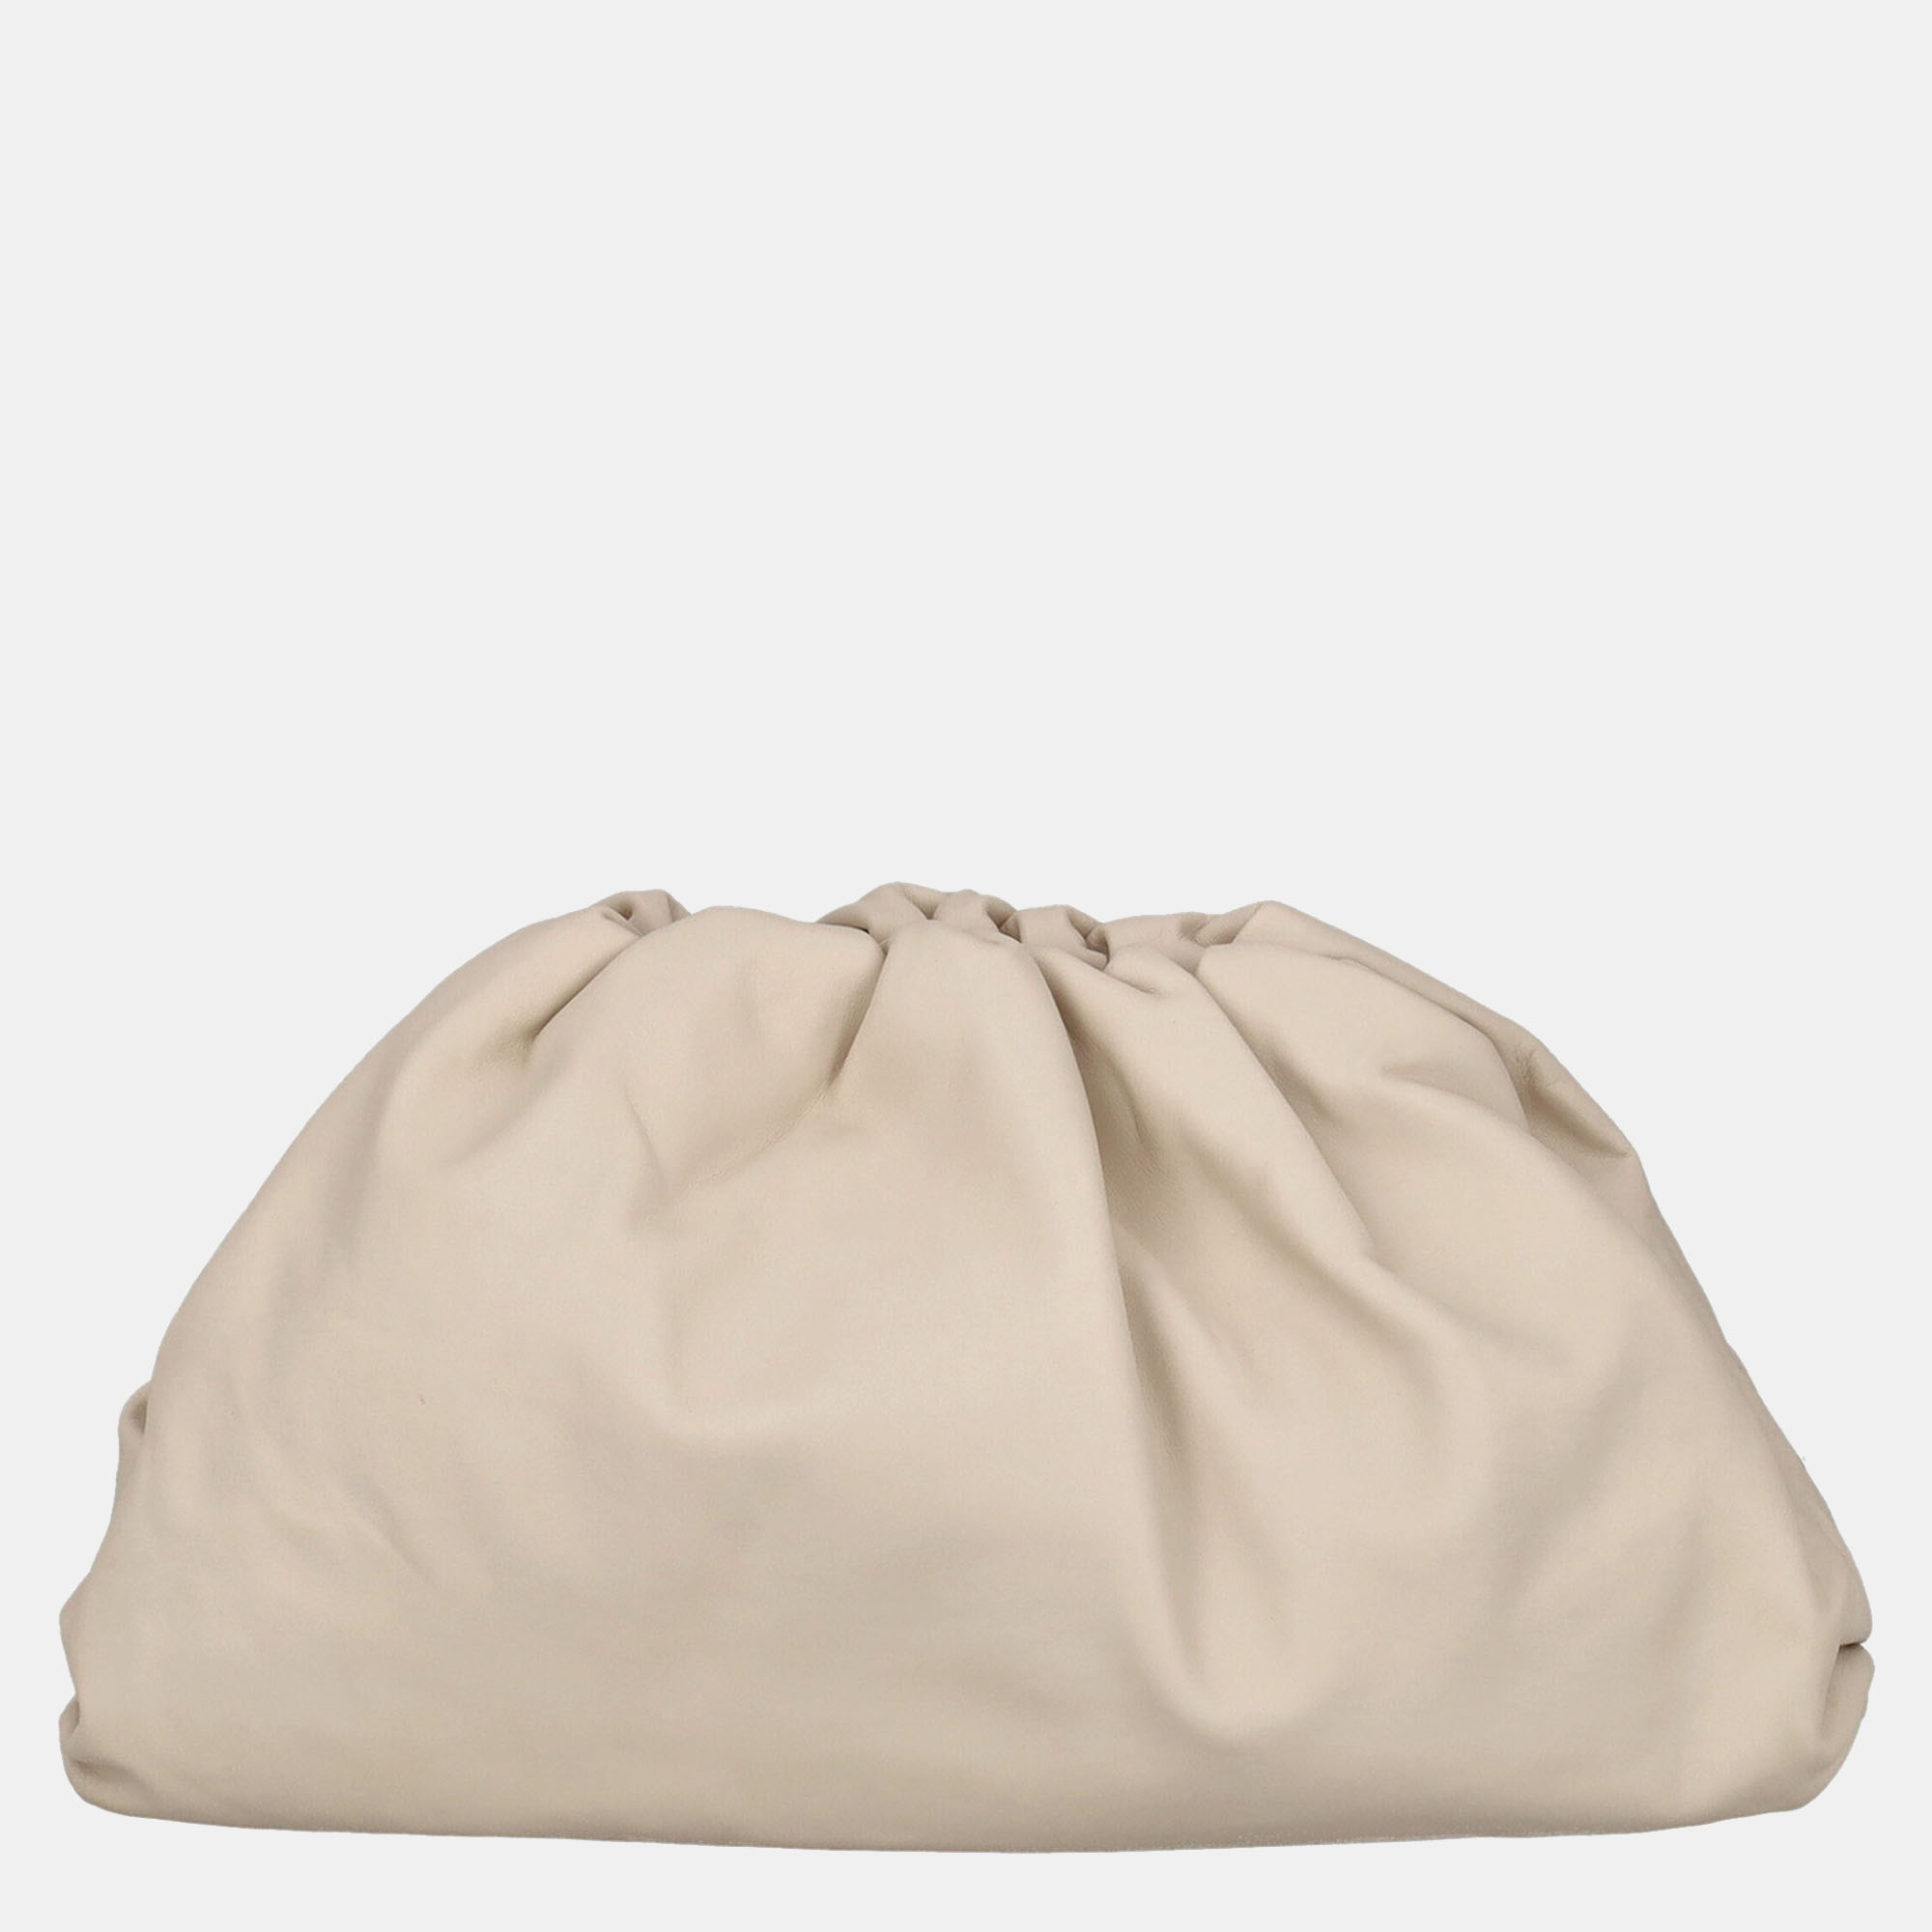 Bottega Veneta  Women's Leather Clutch Bag - Beige - One Size